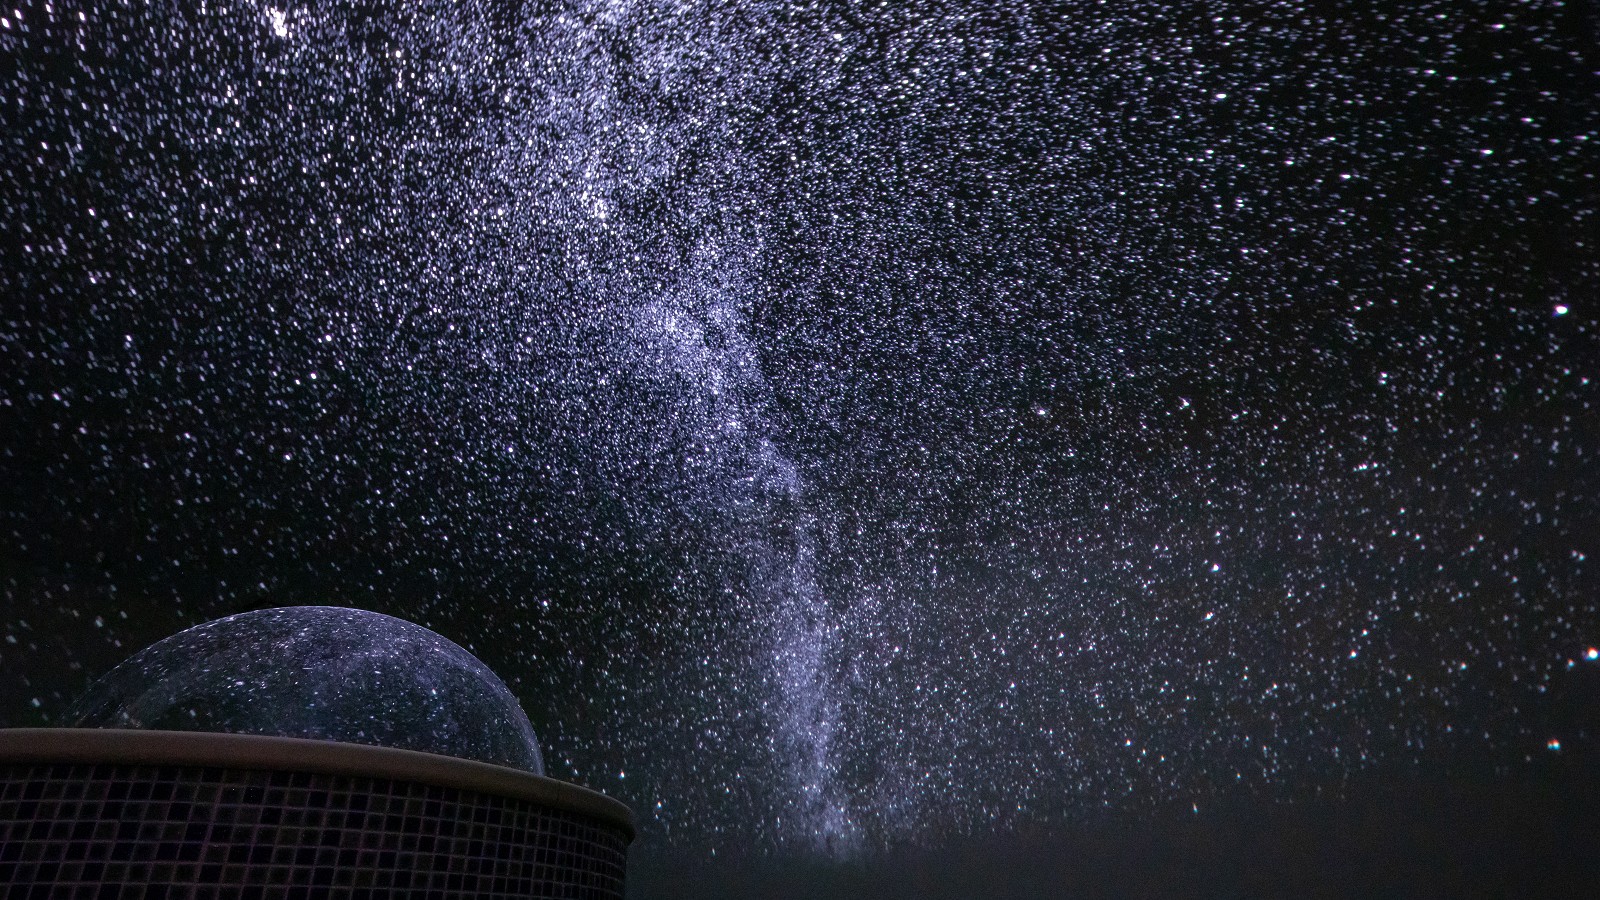 プラネタリウム岩盤浴◆頭上に投映される夜空は、実際の蓼科の星空を再現しております。